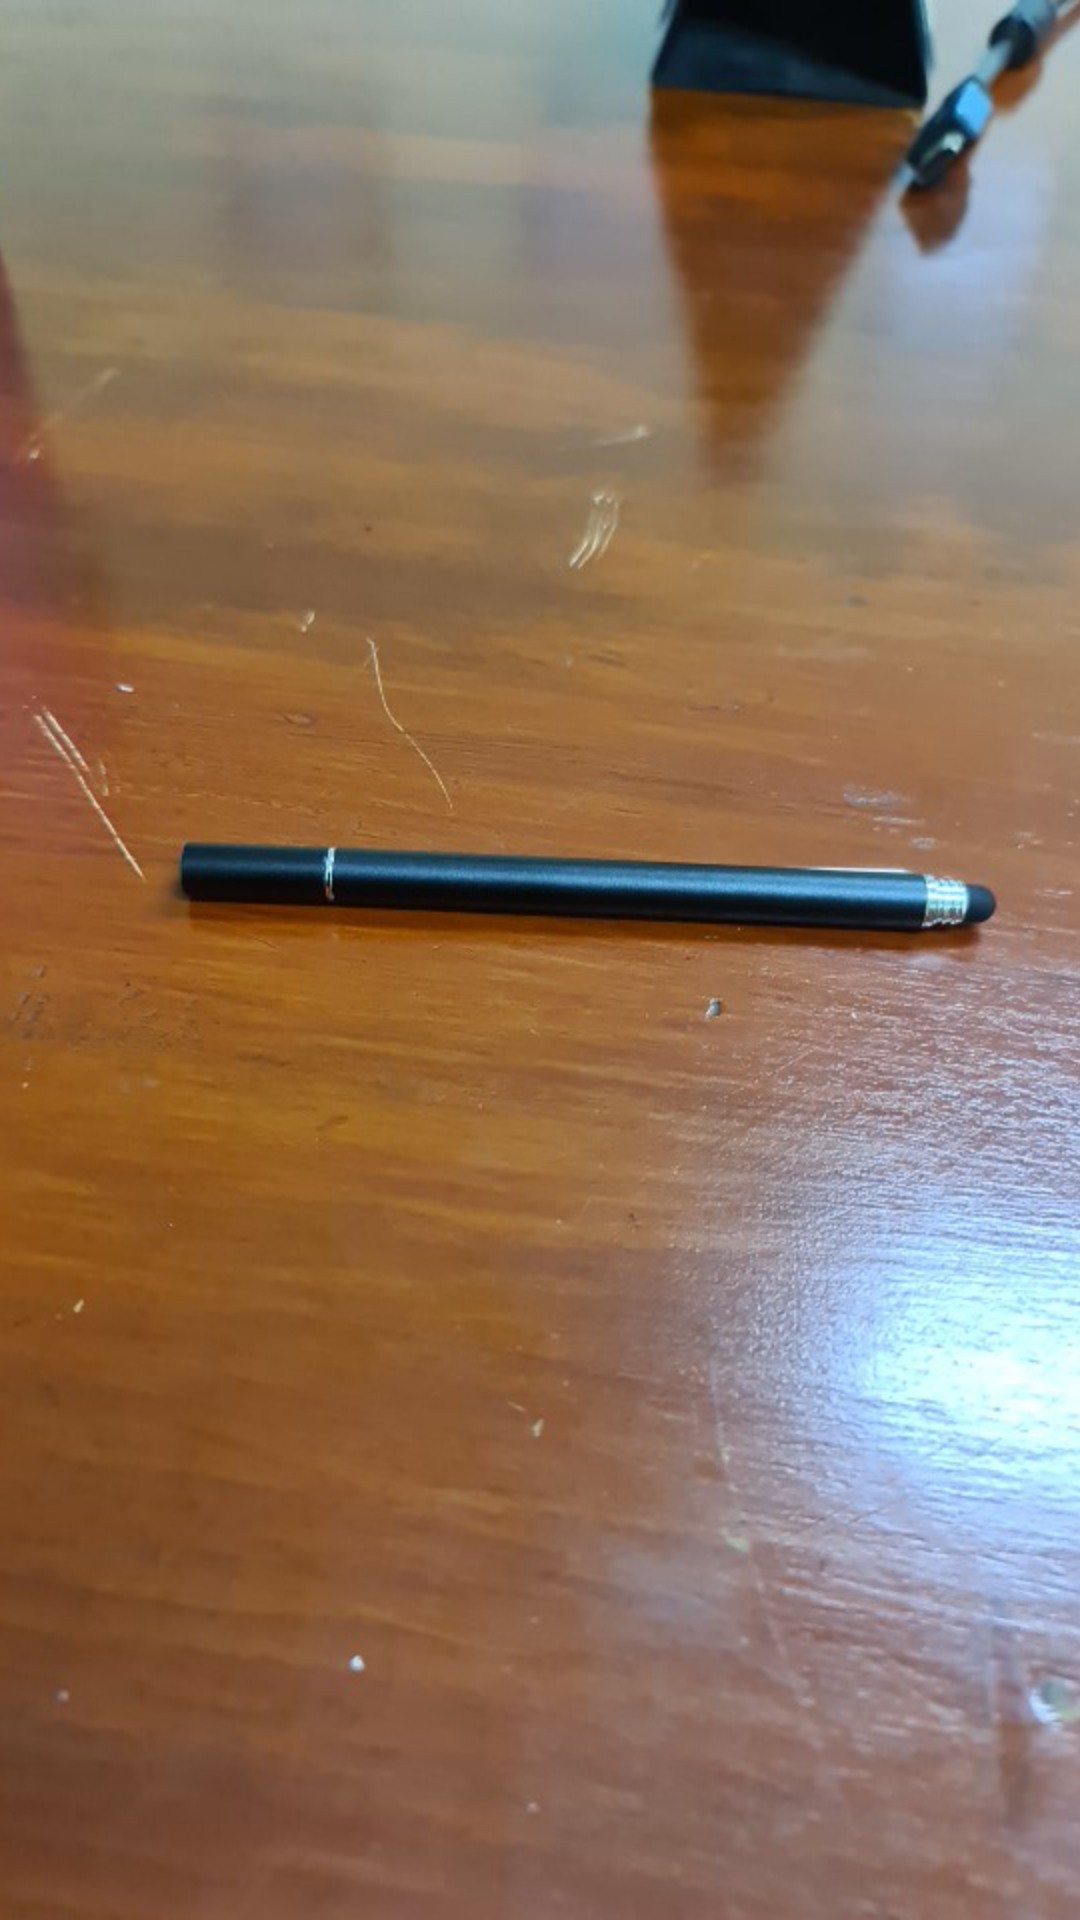 Hdoorlink 2 in 1 Stylus pen Universal Clip Capacitive